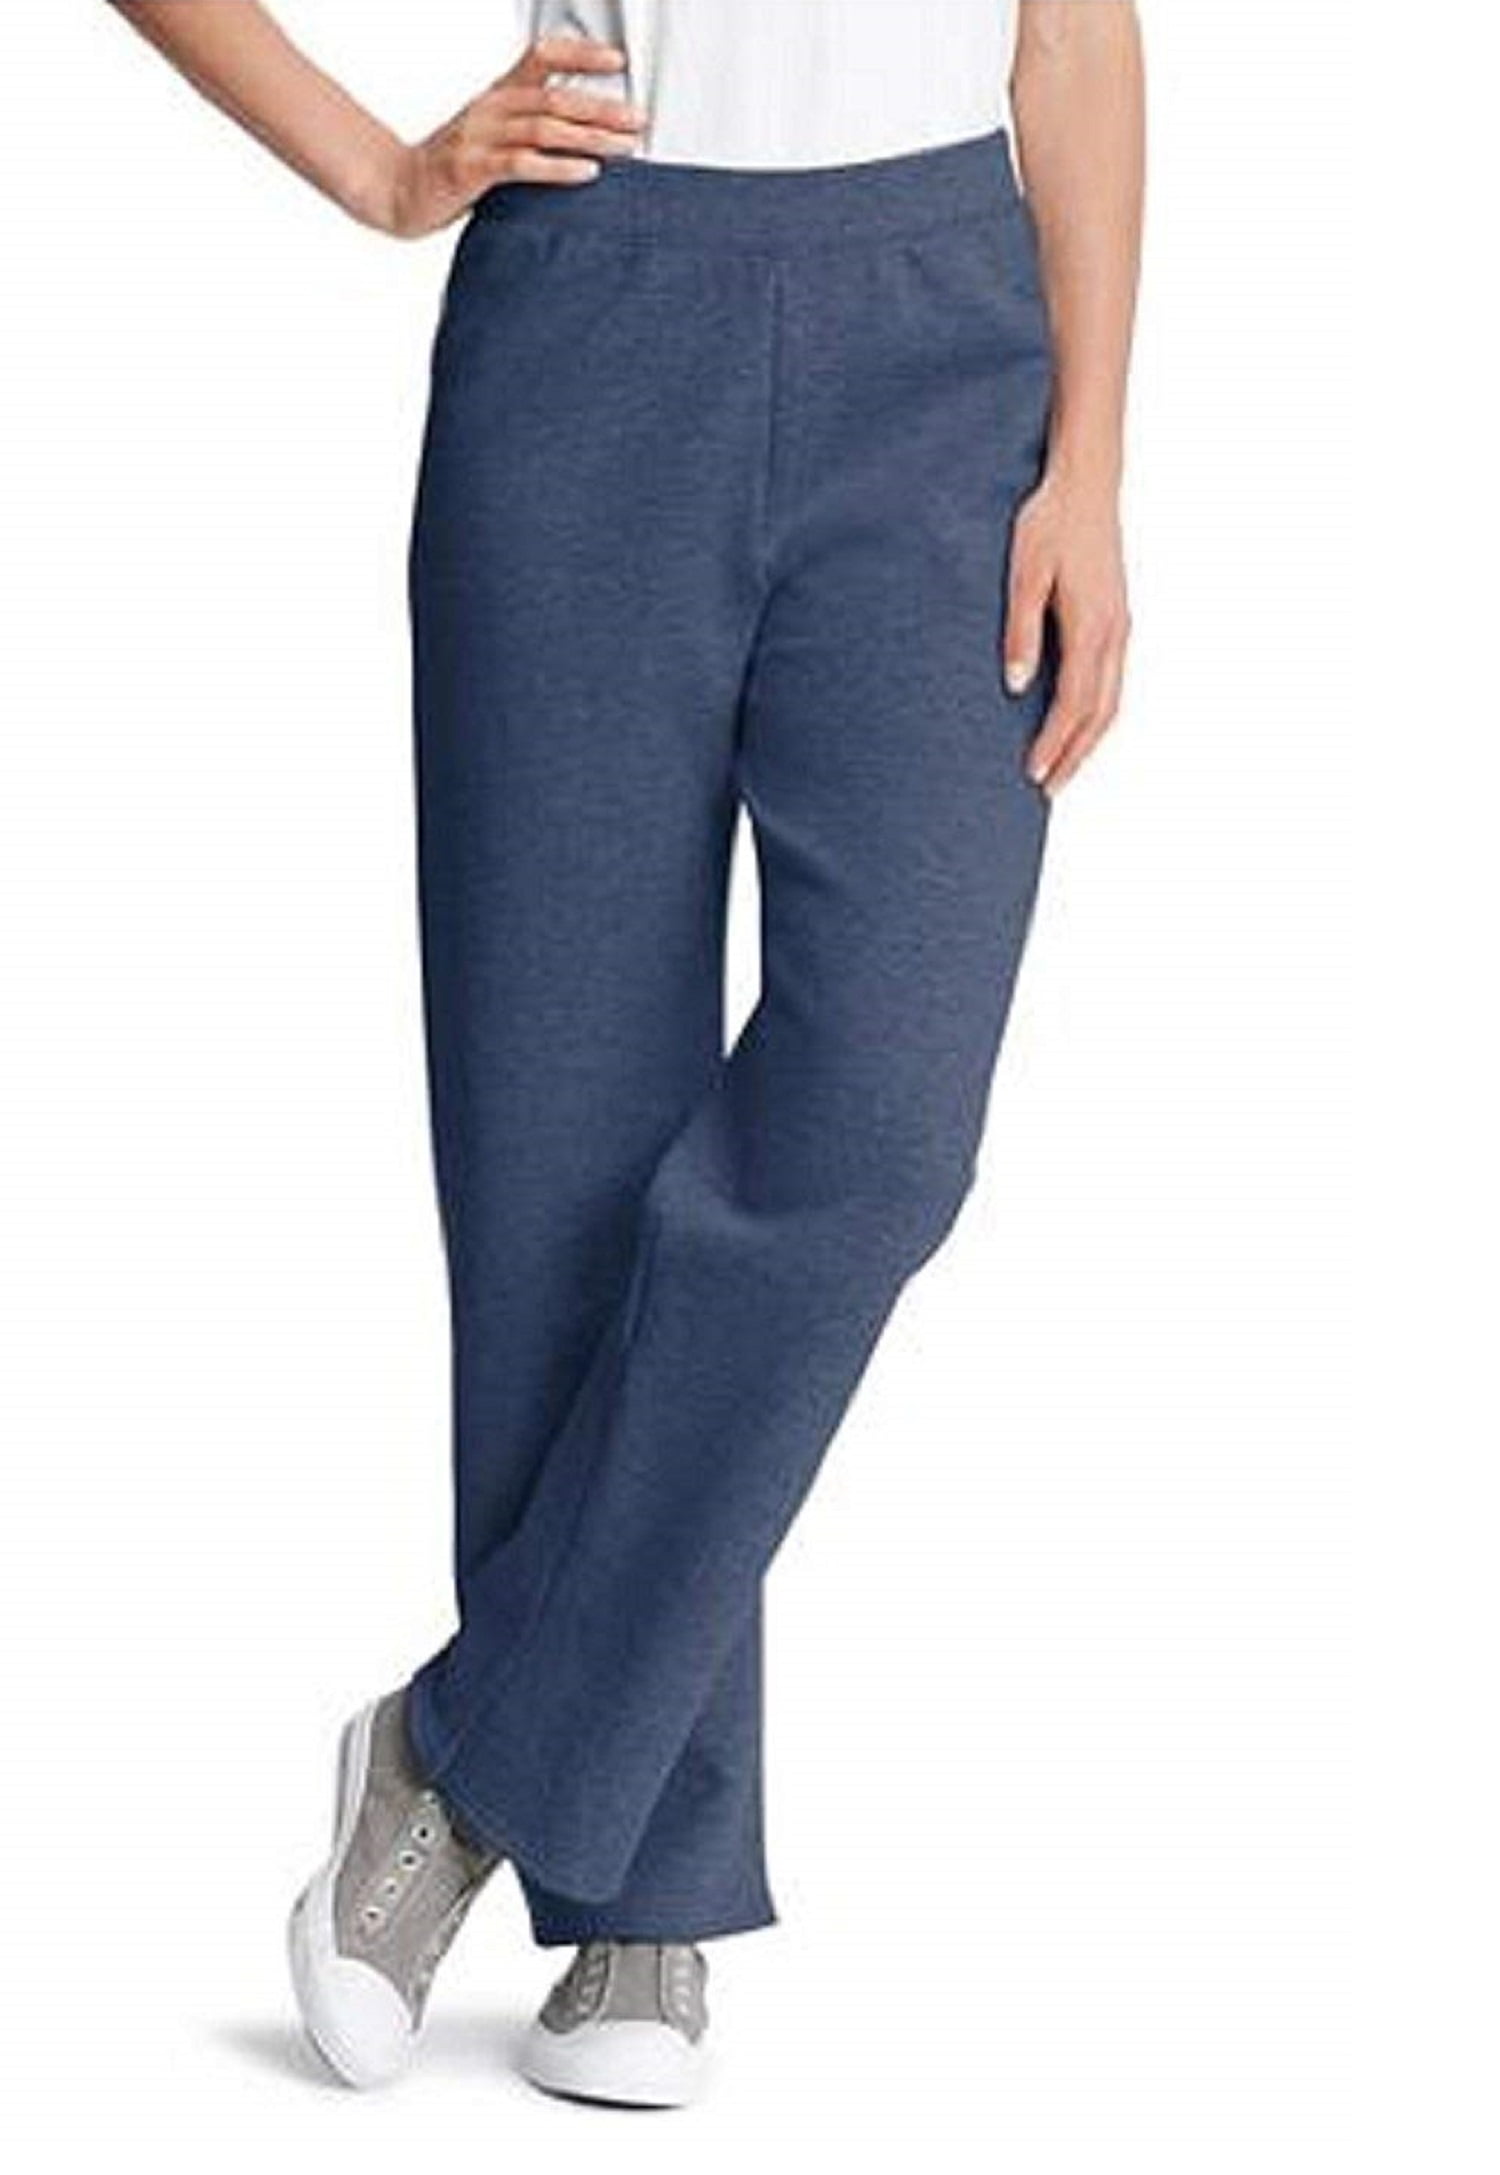 Women's Fleece Sweatpants - Walmart.com